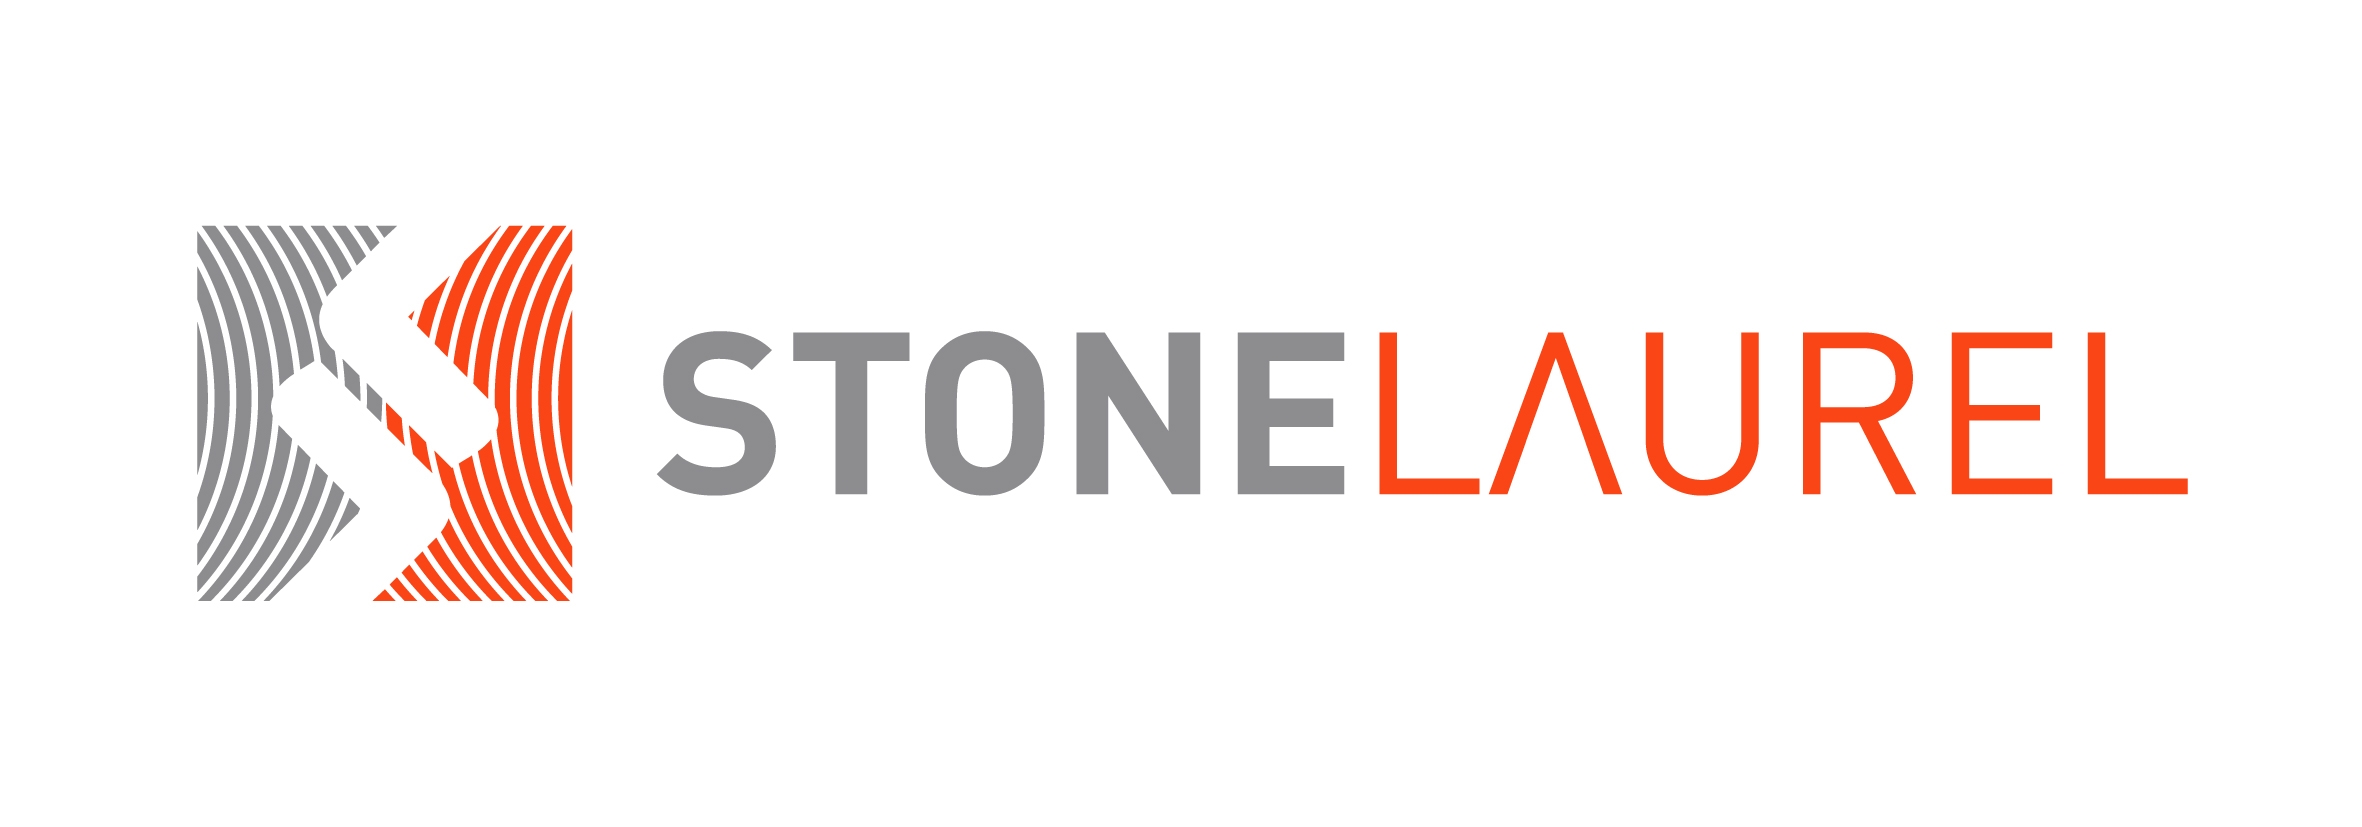 StoneLaurel Consulting logo